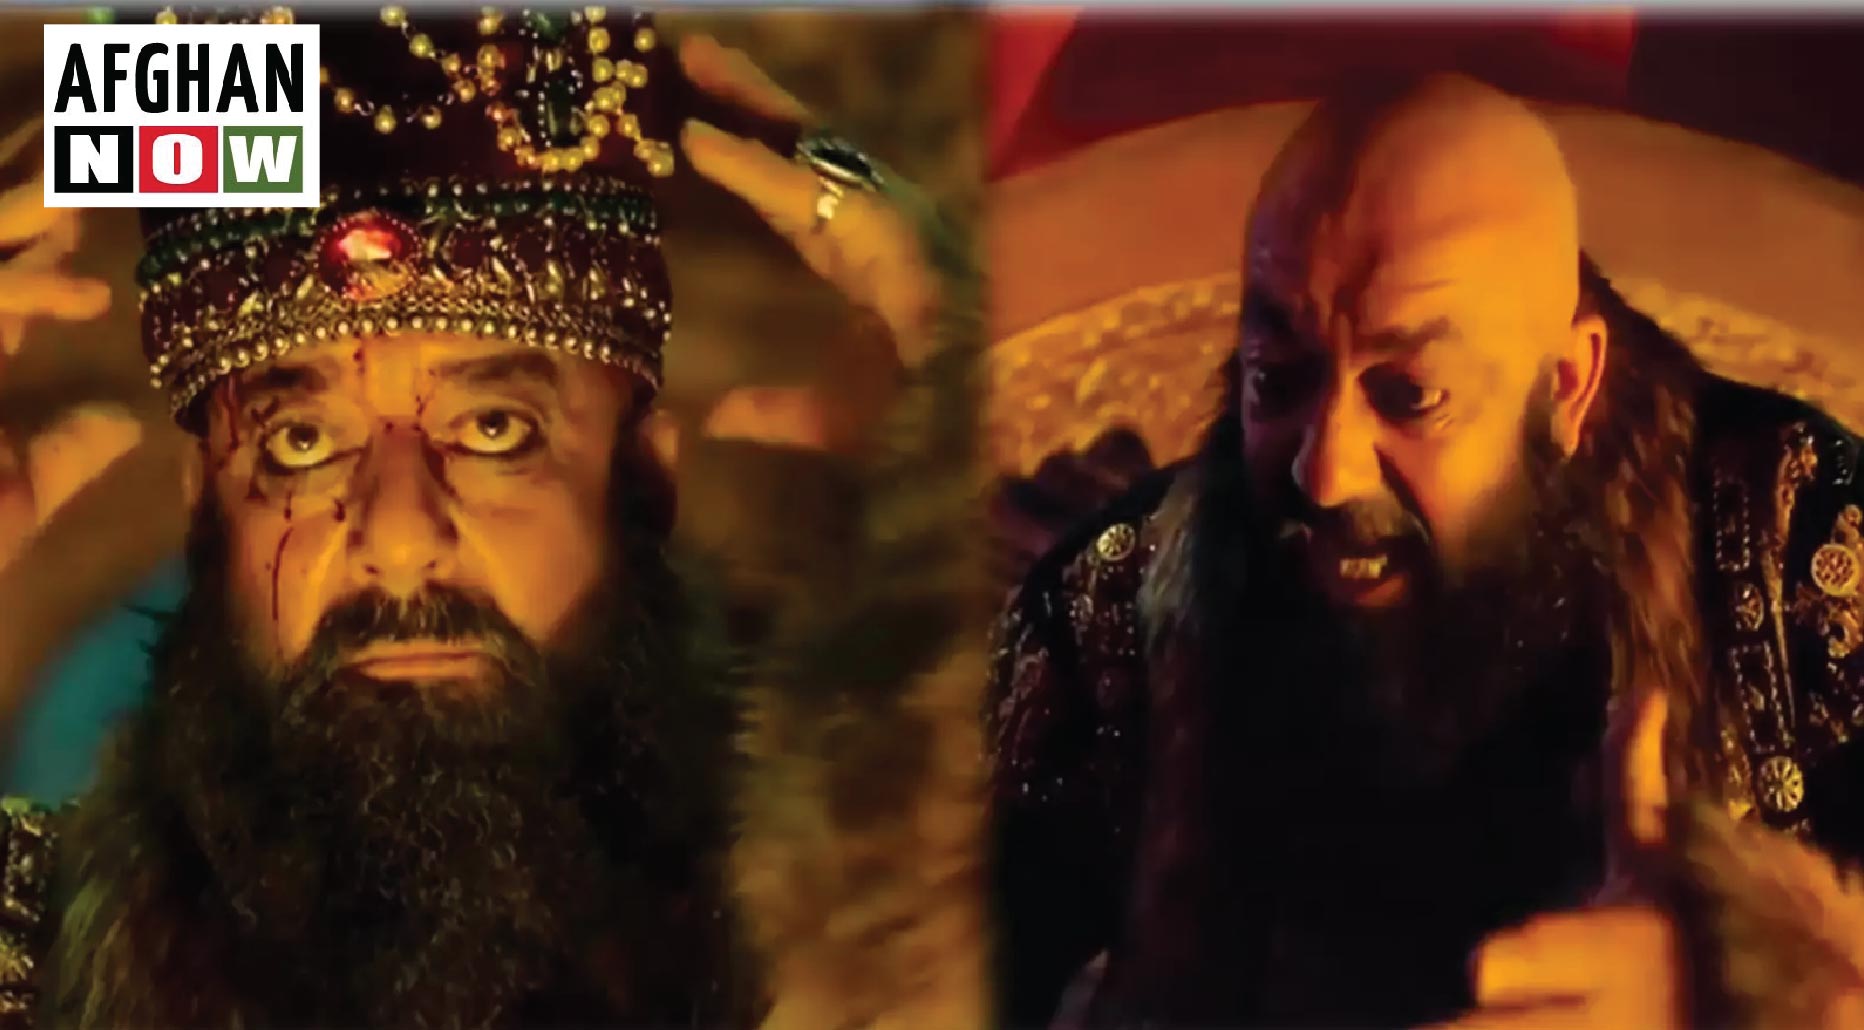 هندي فلم کې د احمد شاه بابا رول لوبونکۍ نوموتی هندۍ هنرمند سنجې دت ٦١ کلن شو